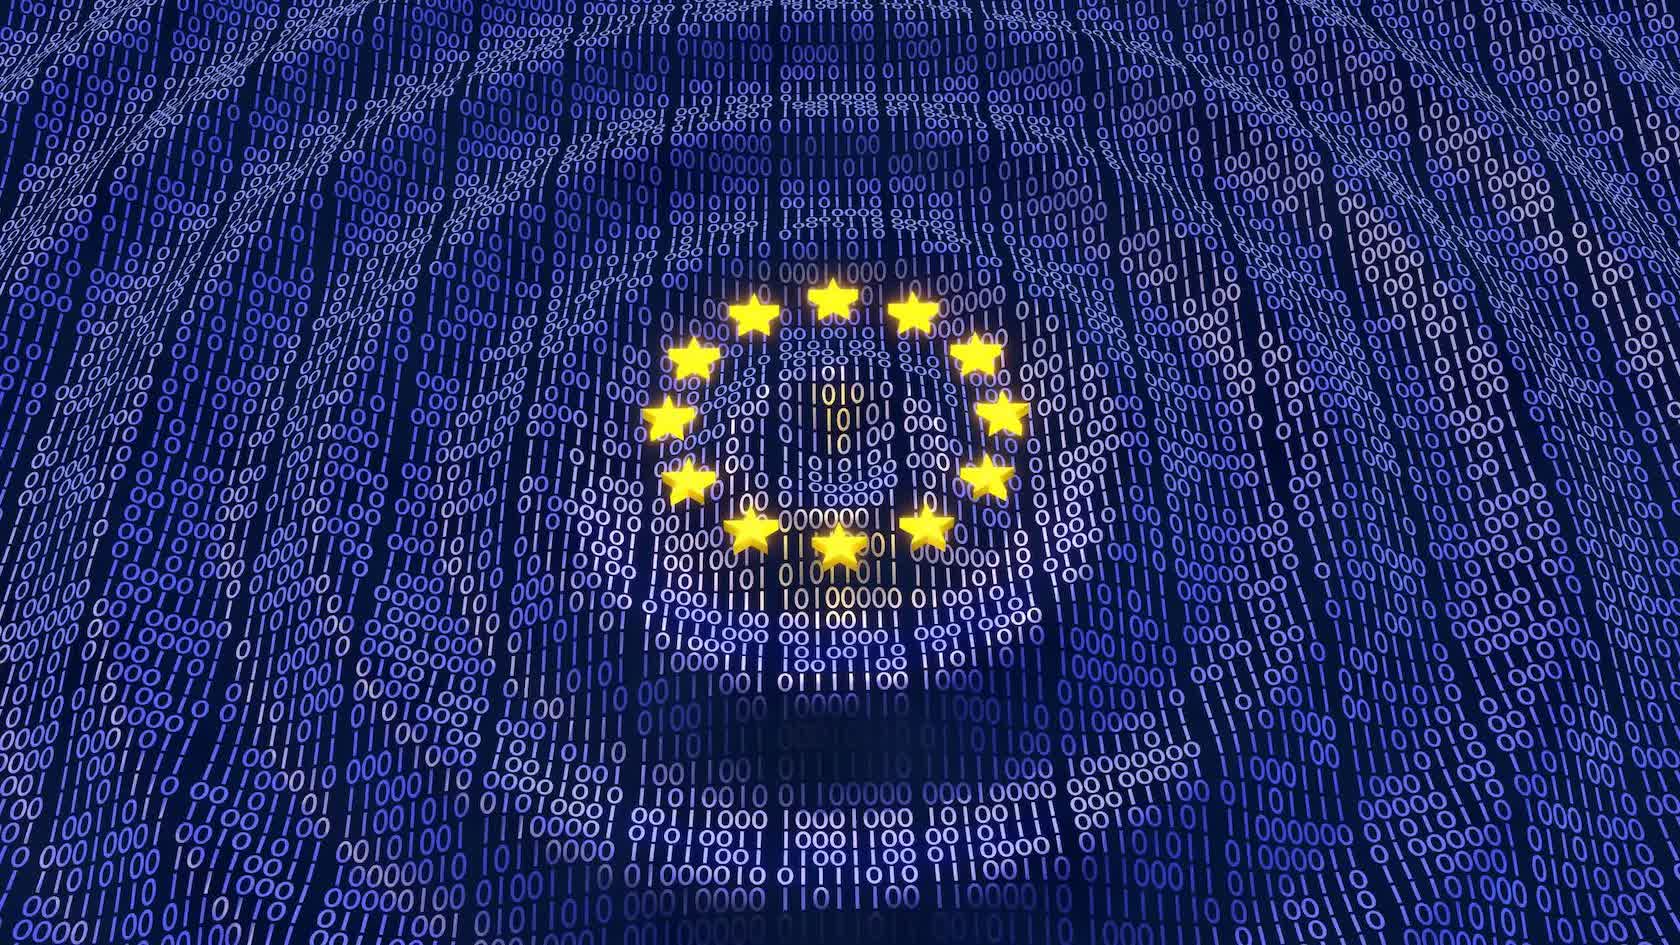 European Union to enact Digital Markets Act tomorrow